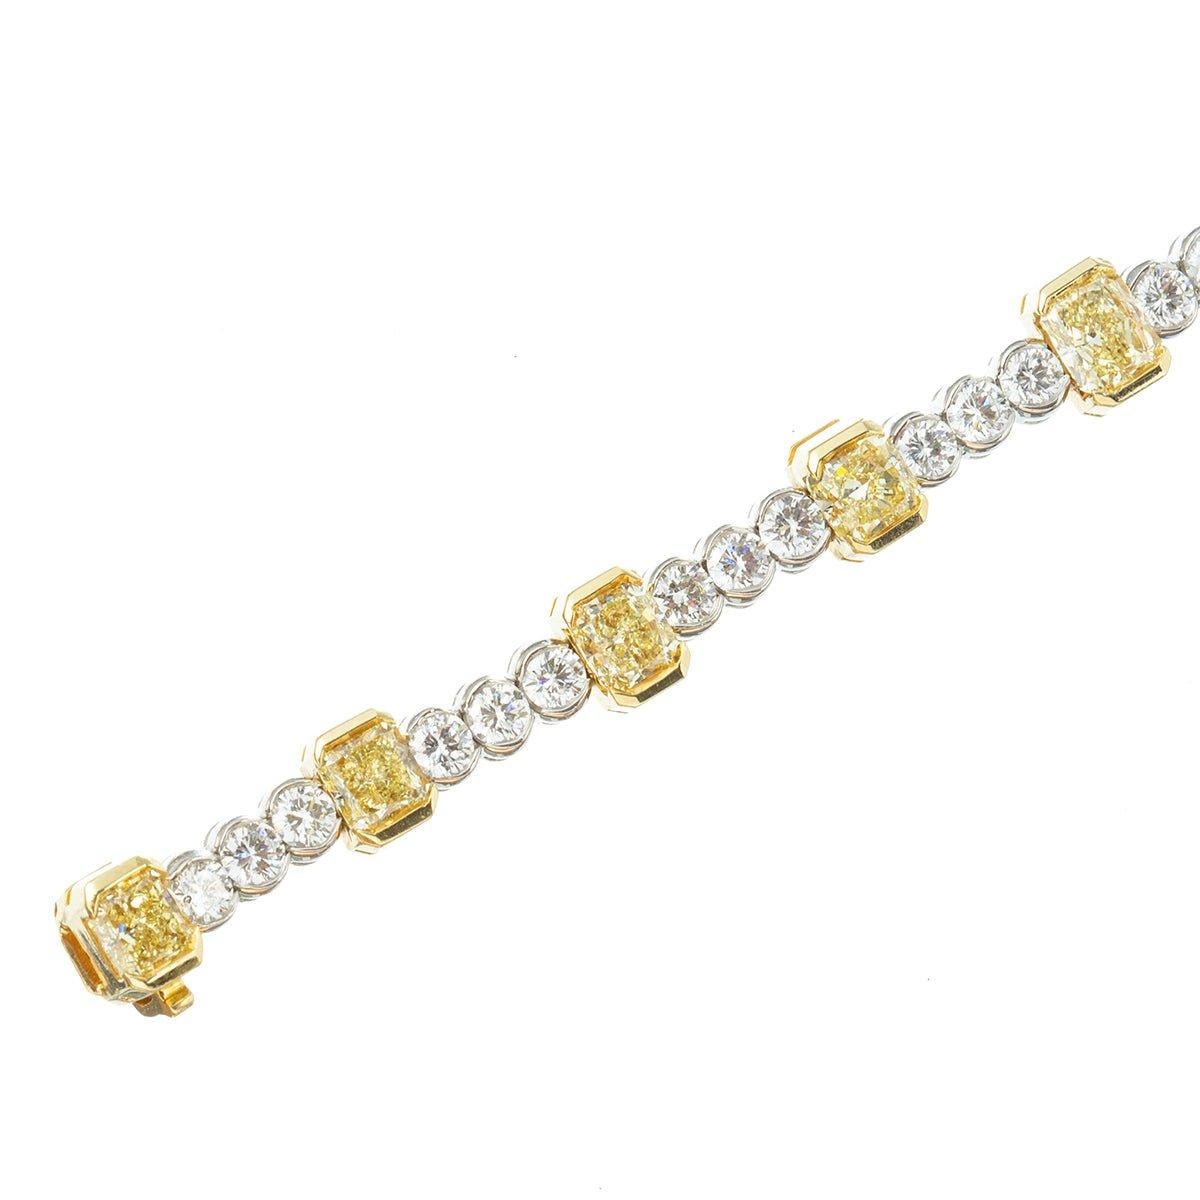 Bracelet en ligne serti de diamants jaunes et blancs, présentant des diamants de taille radiante de couleur naturelle jaune, séparés chacun par trois diamants ronds de taille brillant presque incolores, dans une monture en platine poli et en or